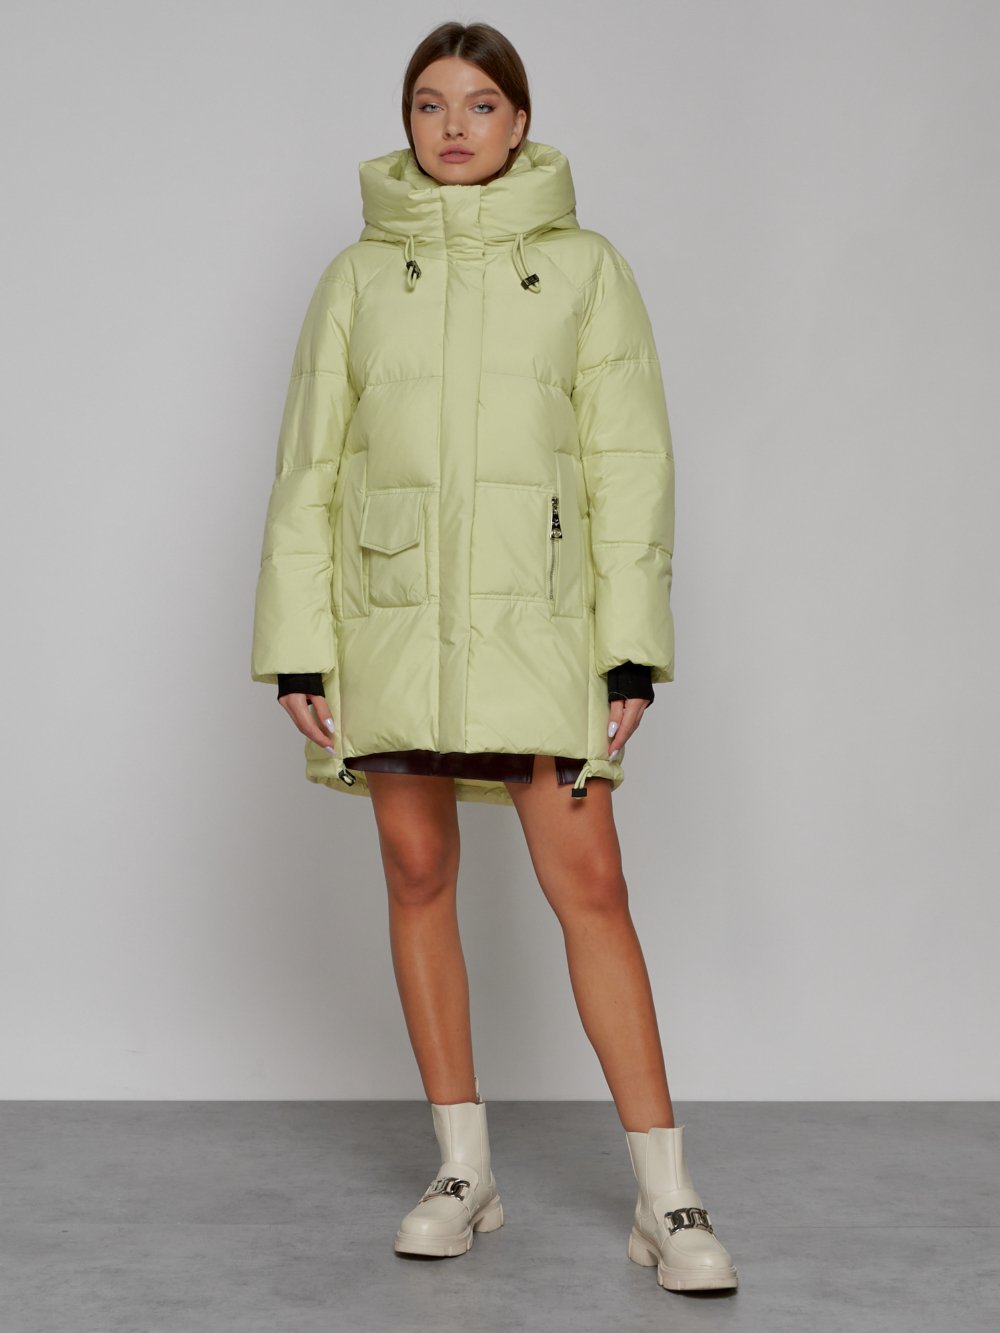 Купить оптом Зимняя женская куртка модная с капюшоном салатового цвета 51122Sl в Казани